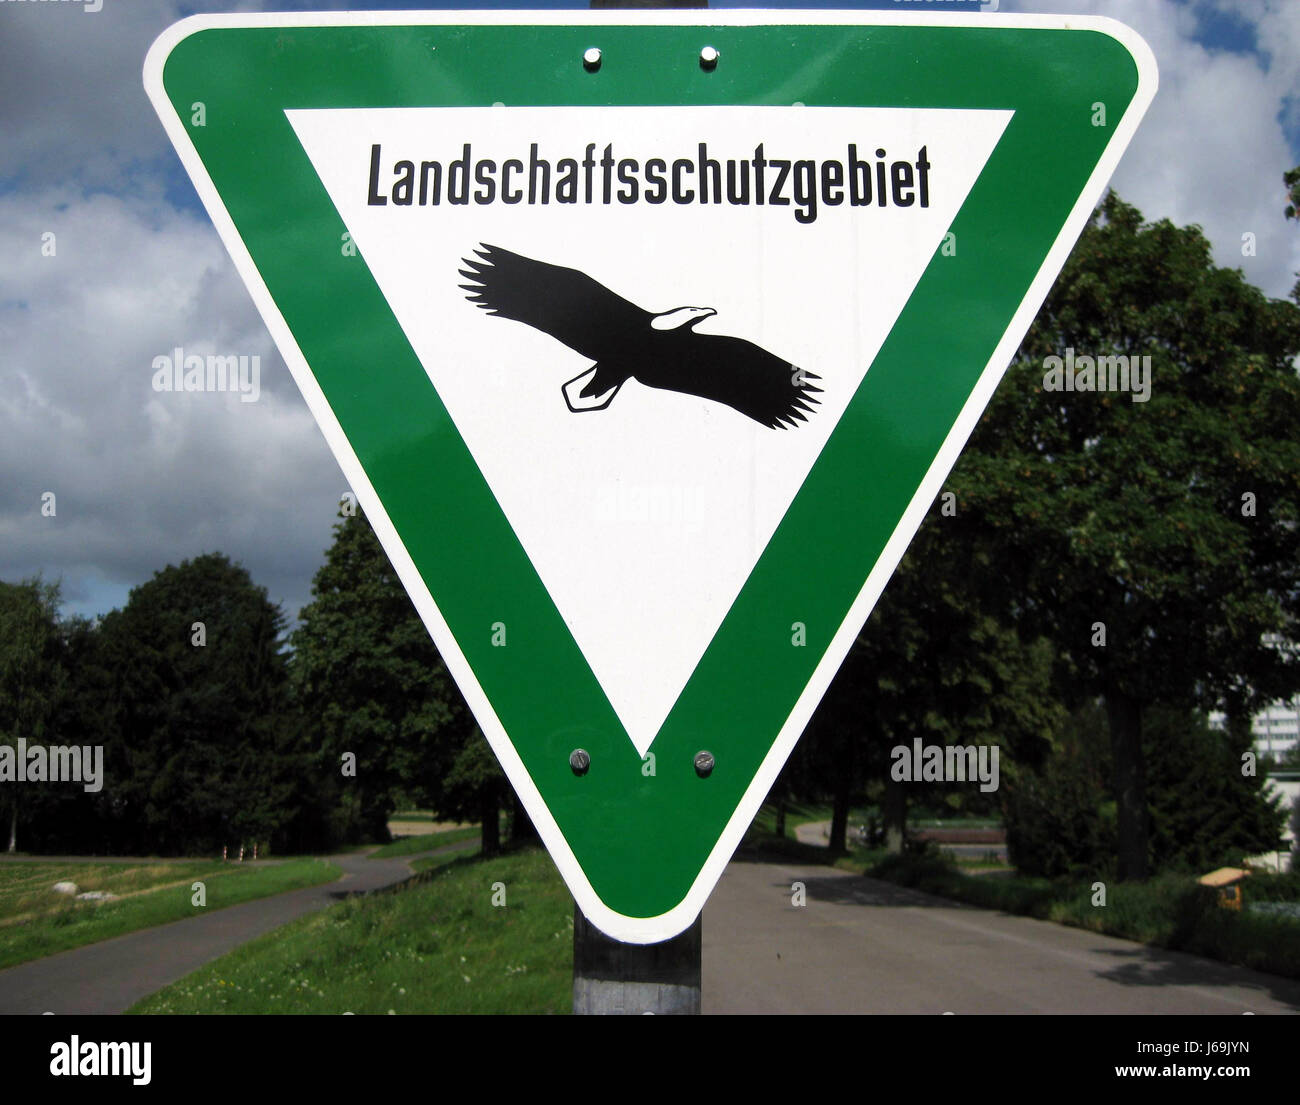 Signal signe la conservation de la nature oiseaux oiseaux photo couleur eagle path chemin Banque D'Images